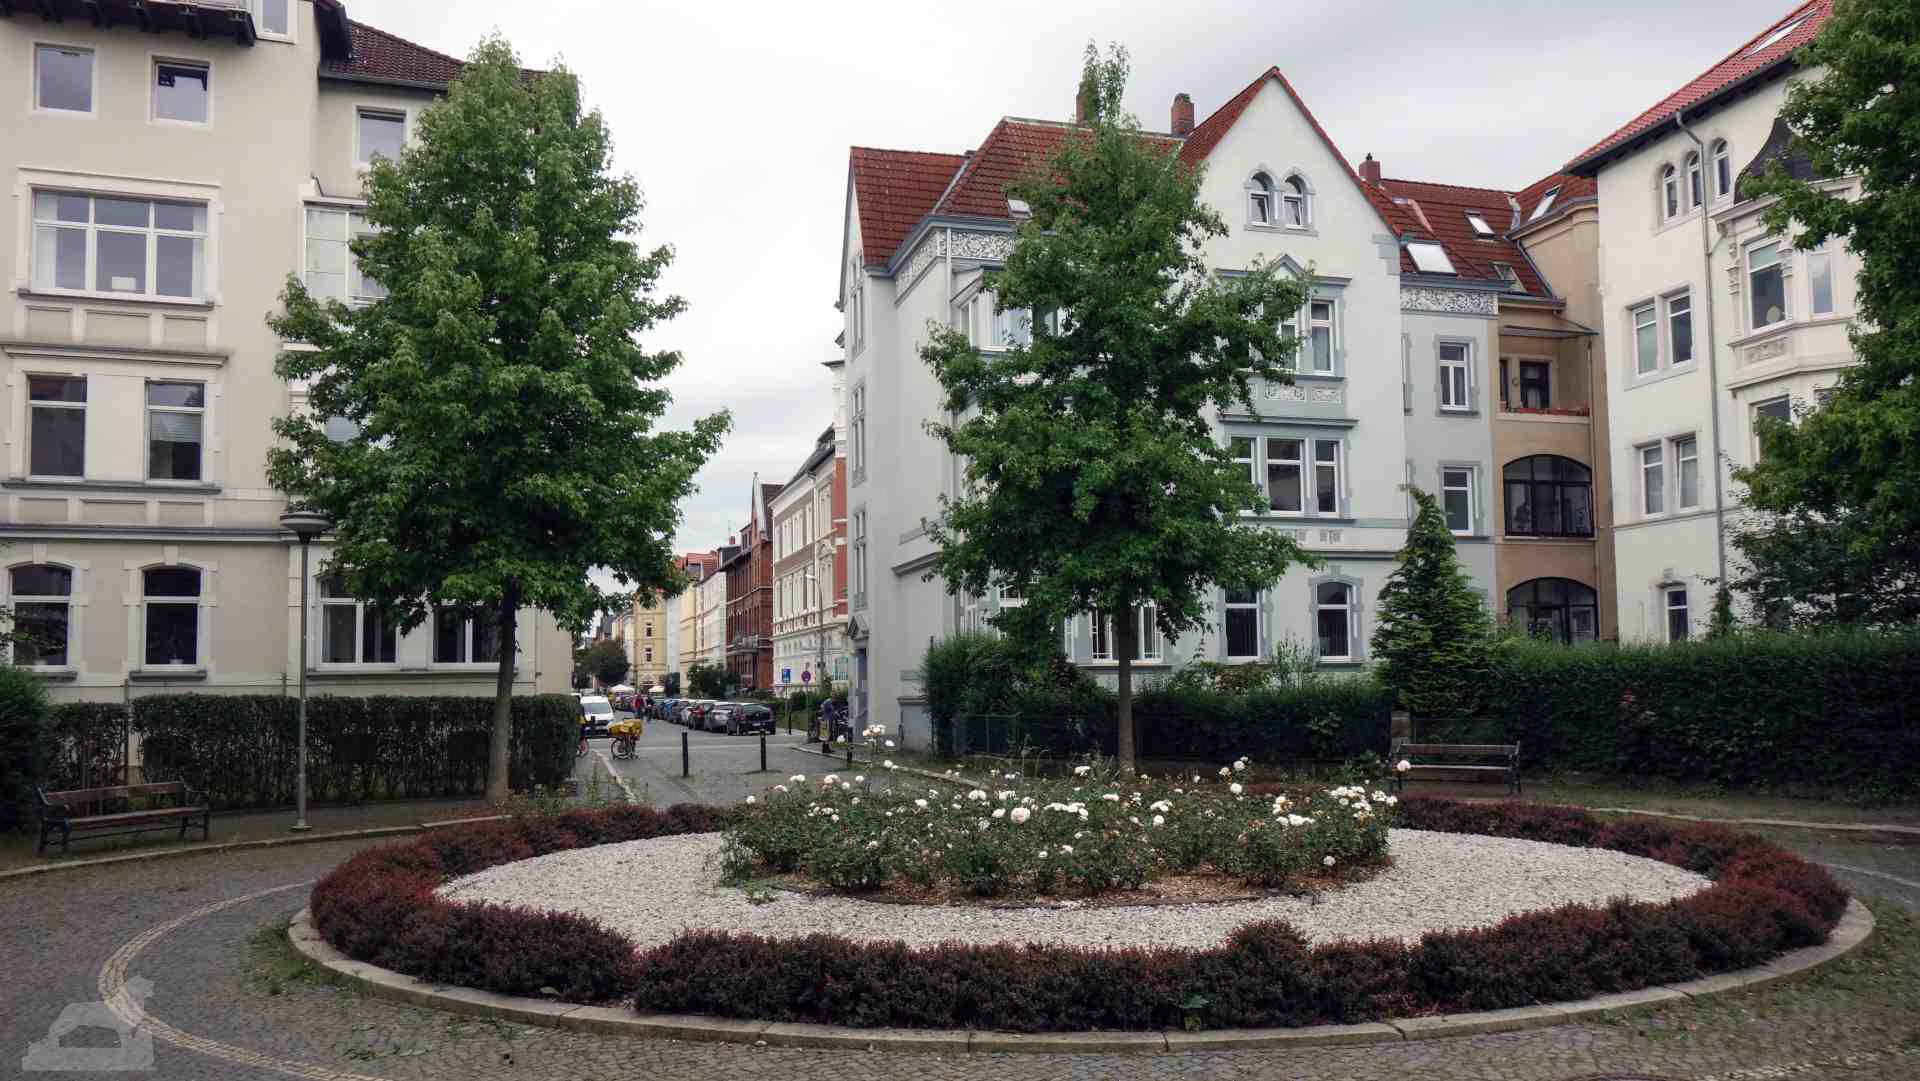 Olfermann-Platz